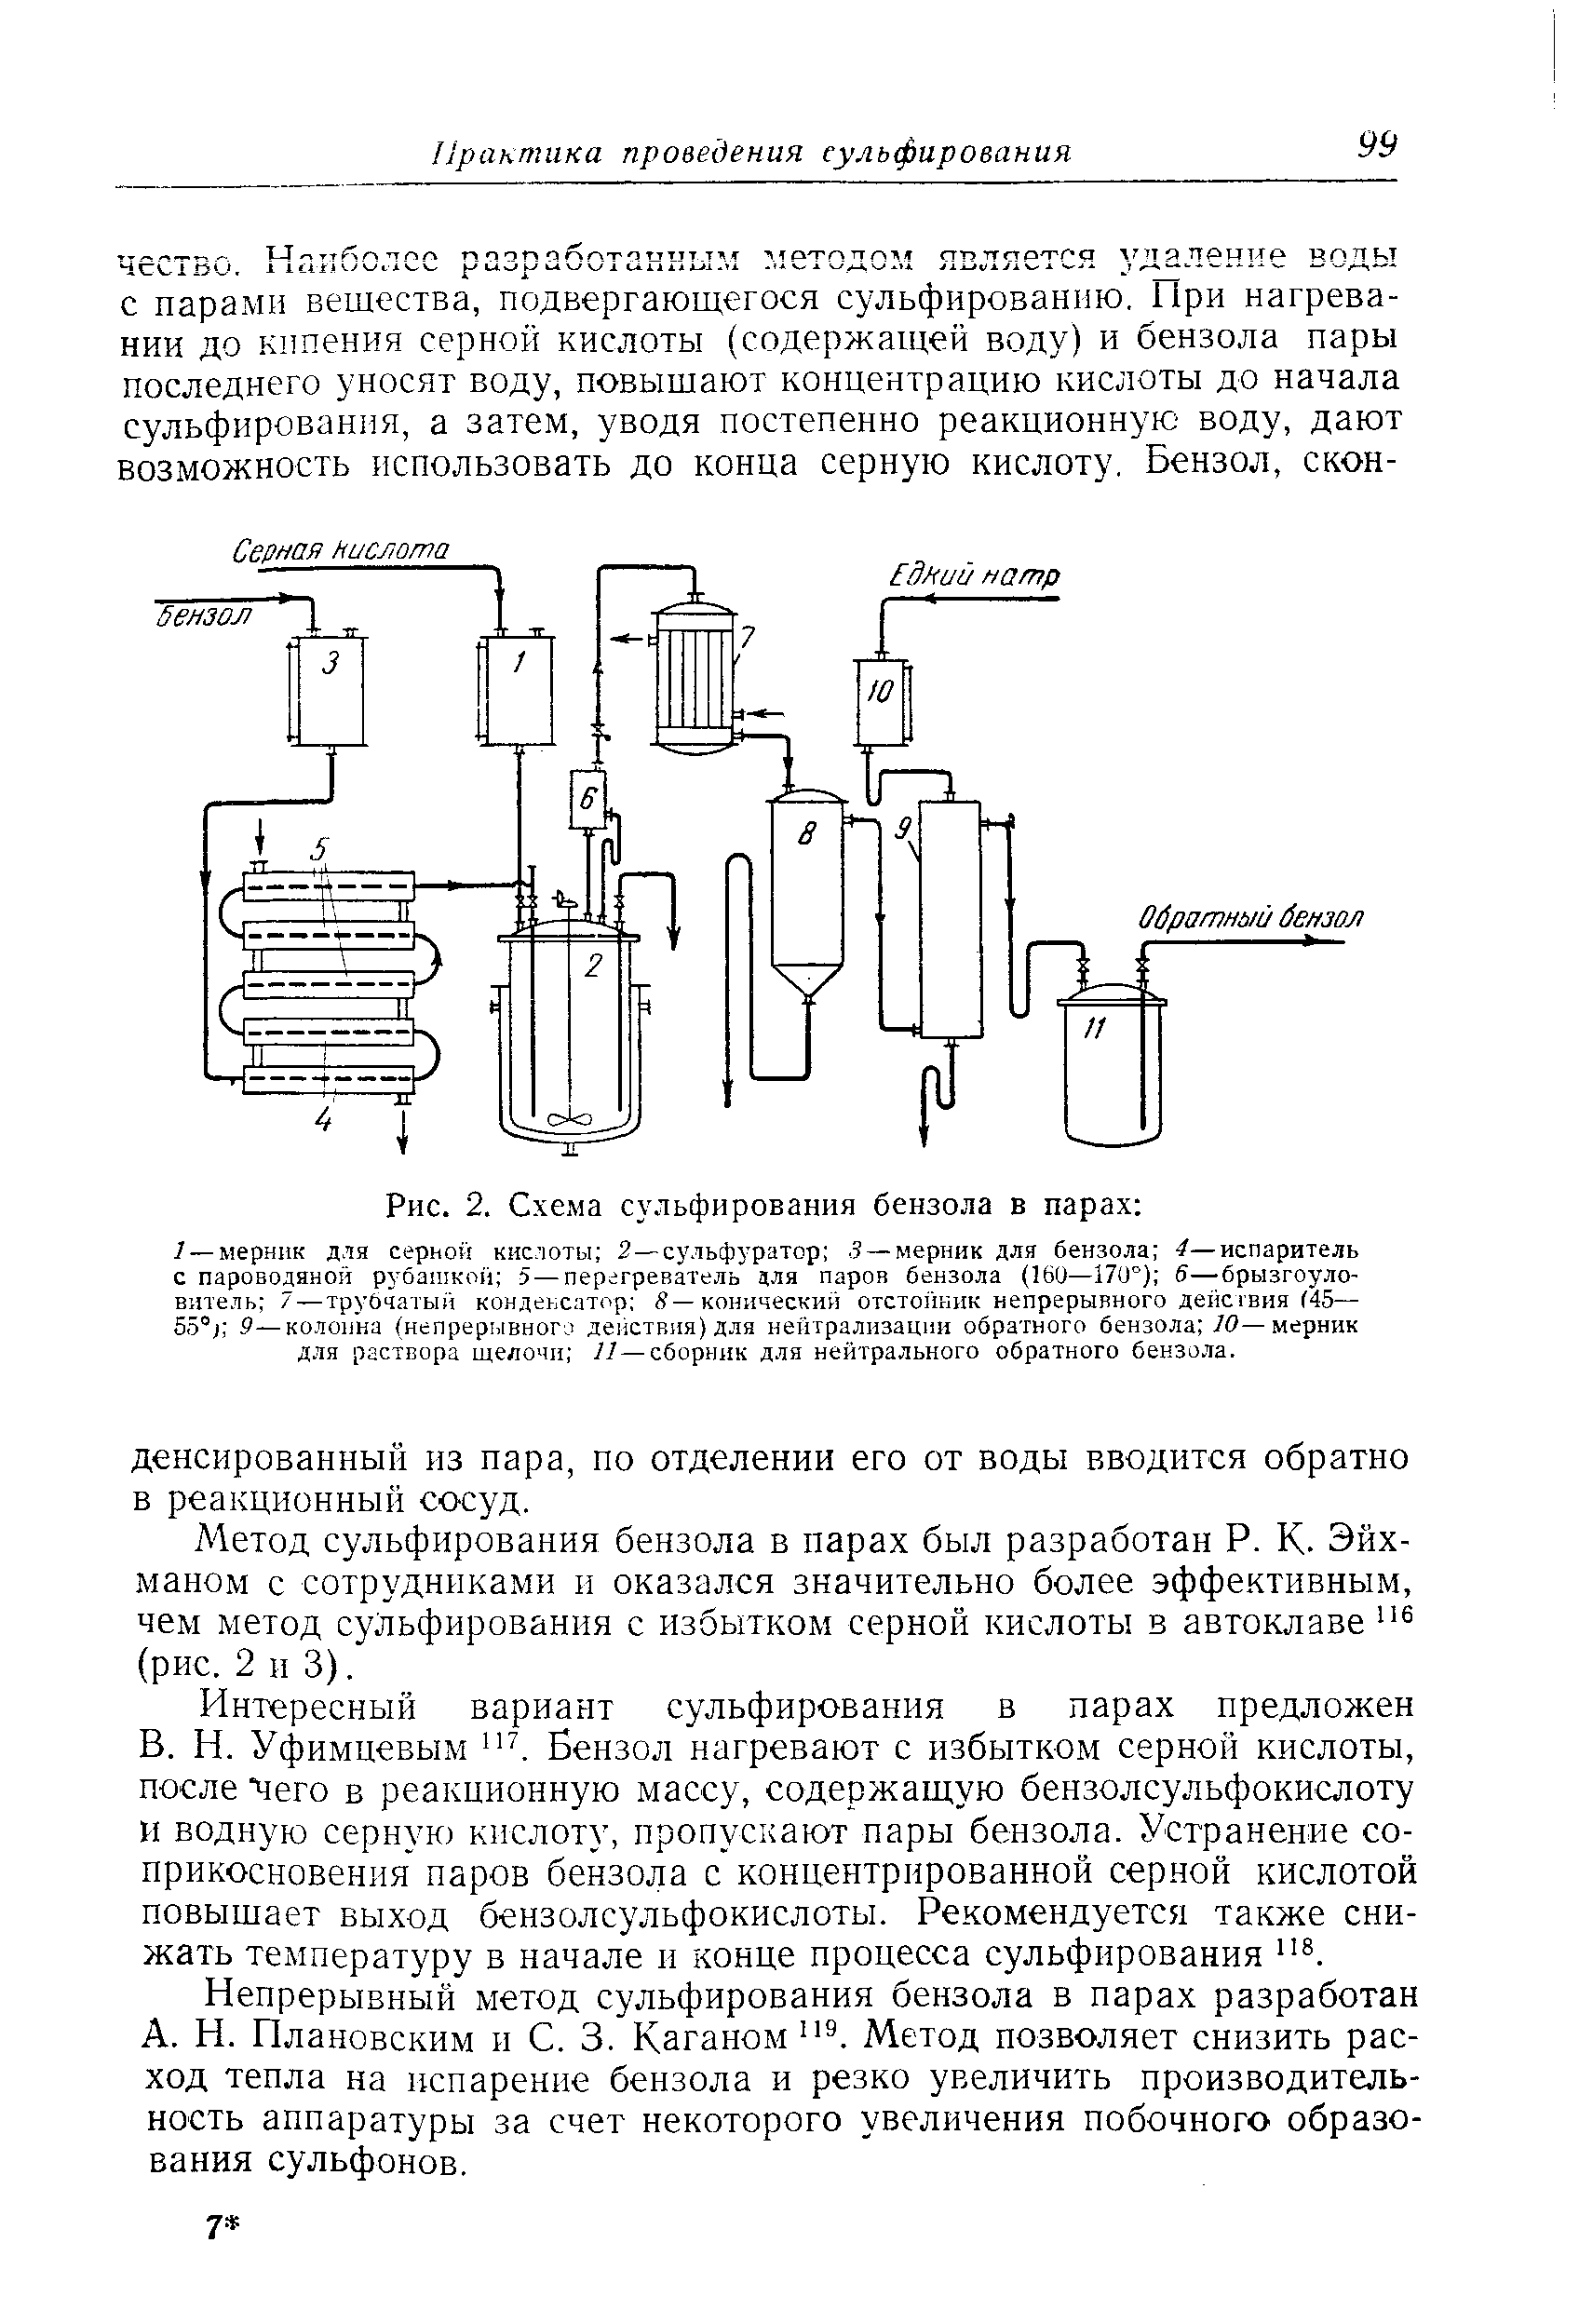 Метод сульфирования бензола в парах был разработан Р. К. Эйх-маном с сотрудниками и оказался значительно более эффективным, чем метод сульфирования с избытком серной кислоты в автоклаве (рис. 2 и 3).